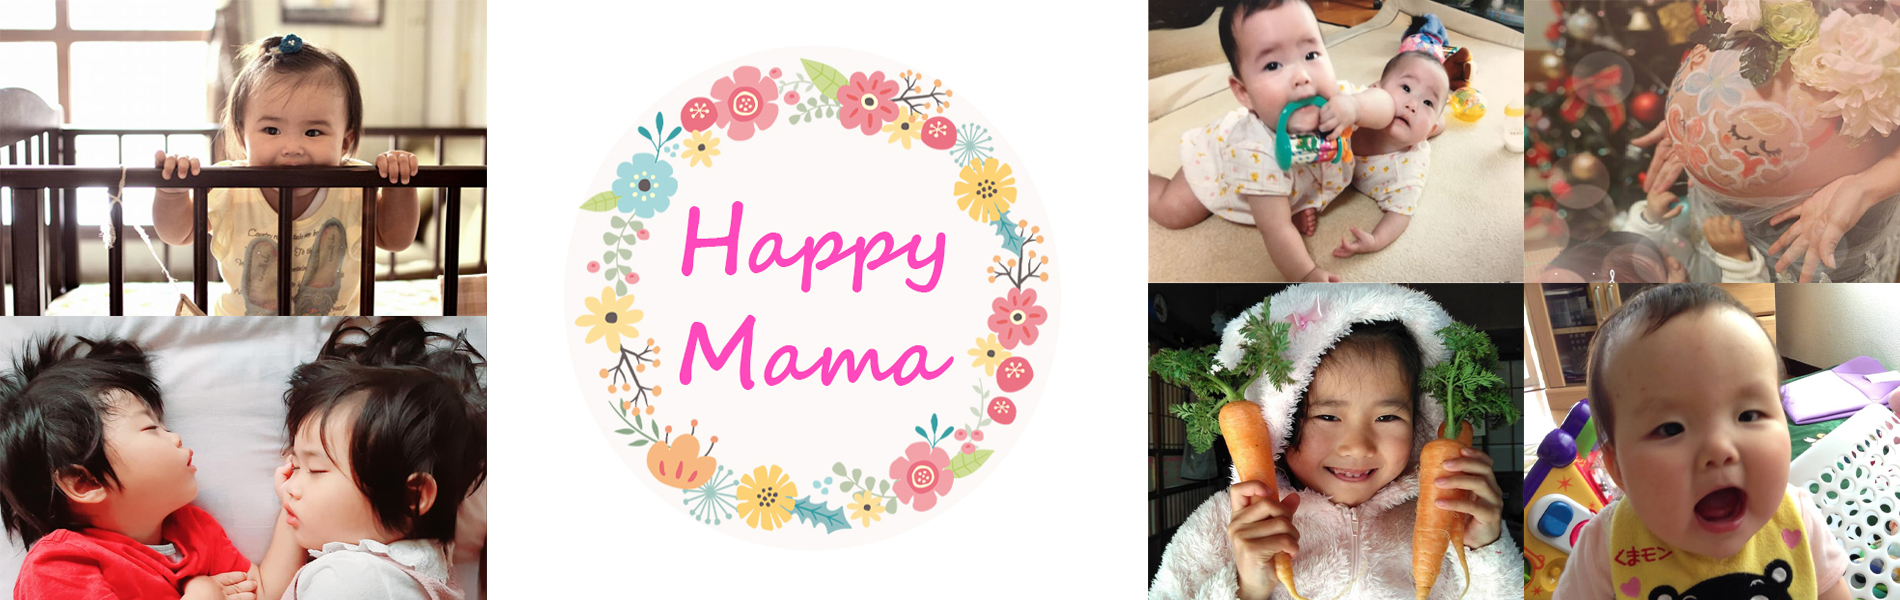 Happy Mamaプロジェクト